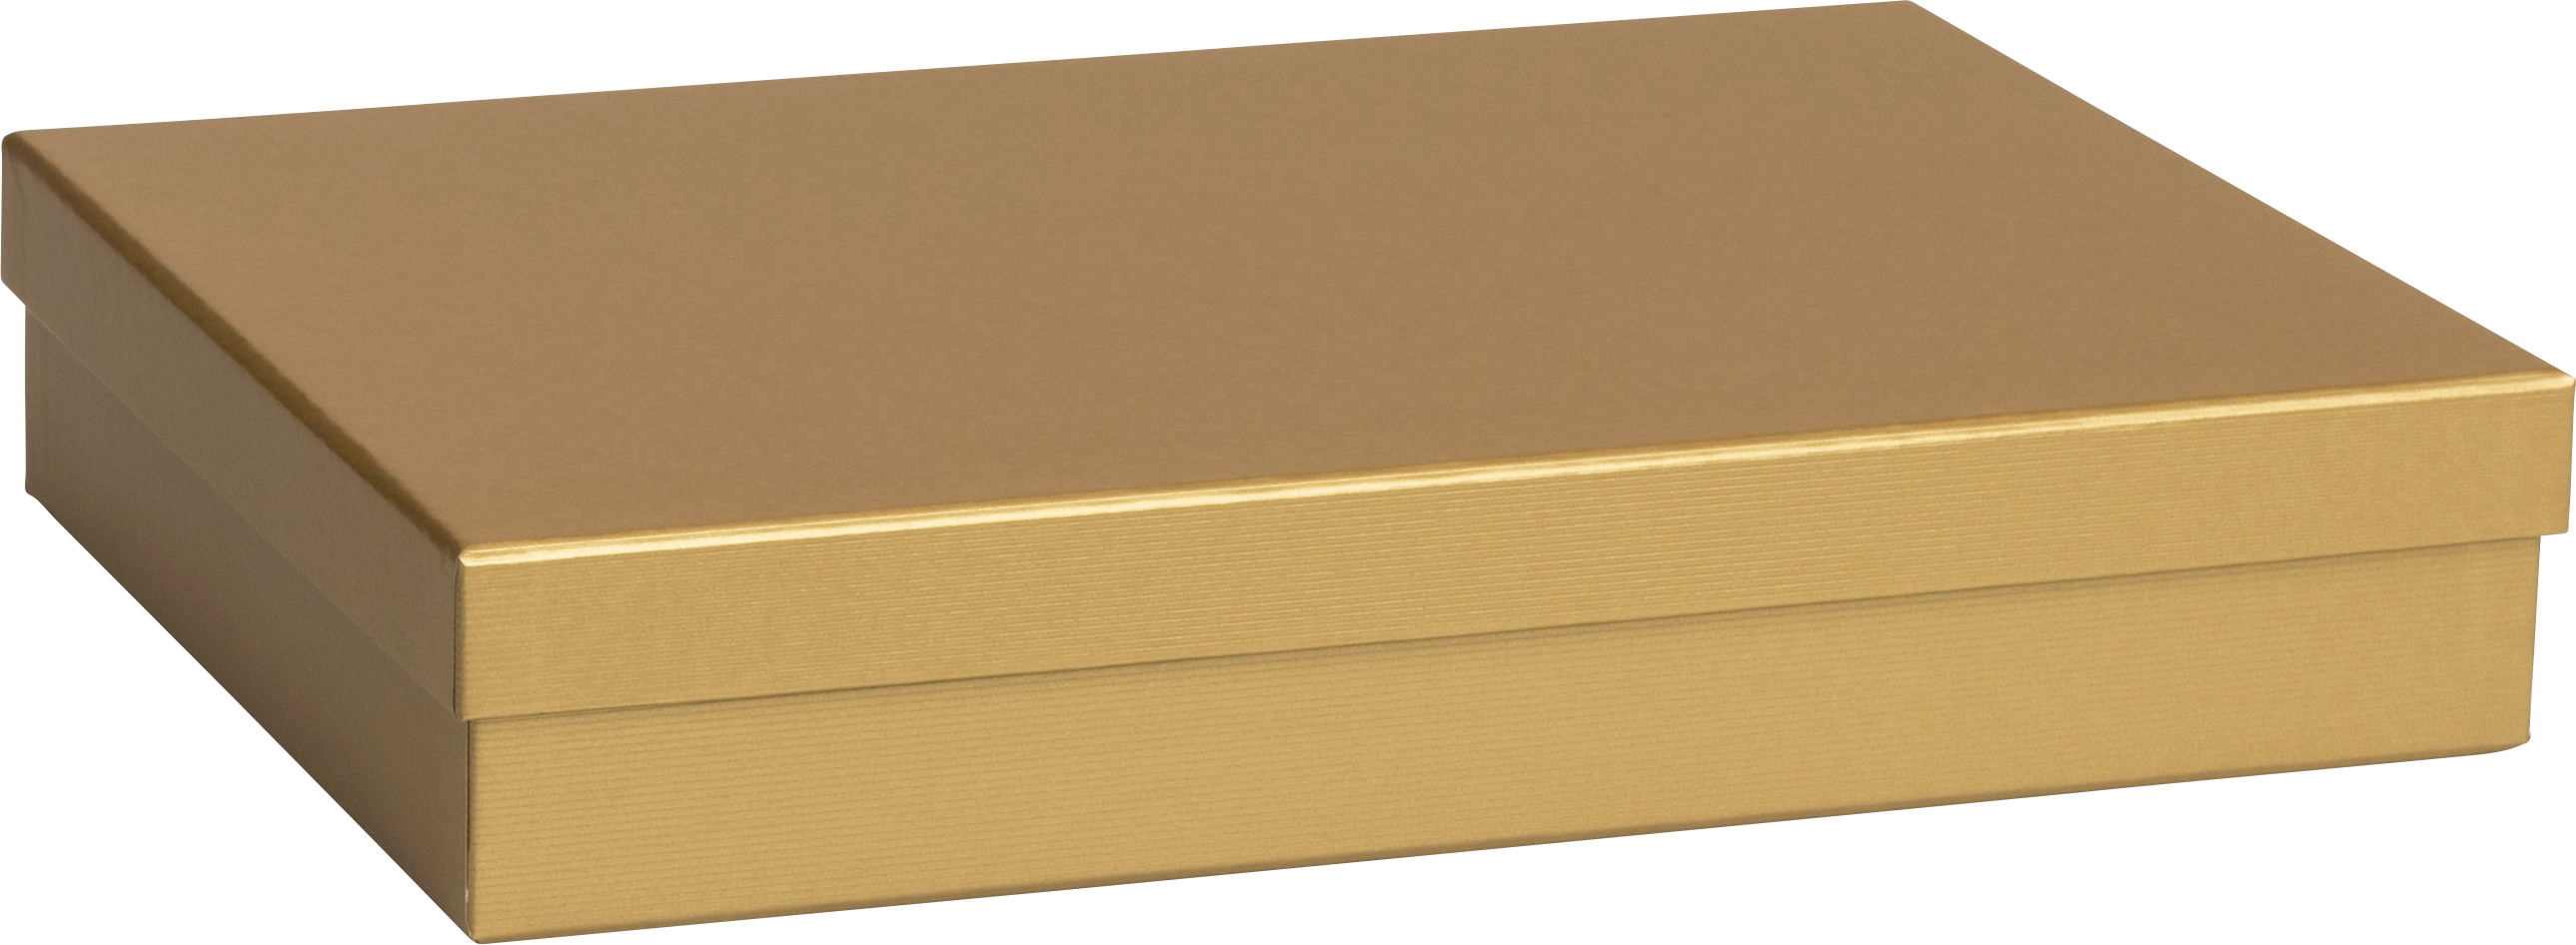 STEWO Geschenkbox One Colour 2551782093 gold 24x33x6cm